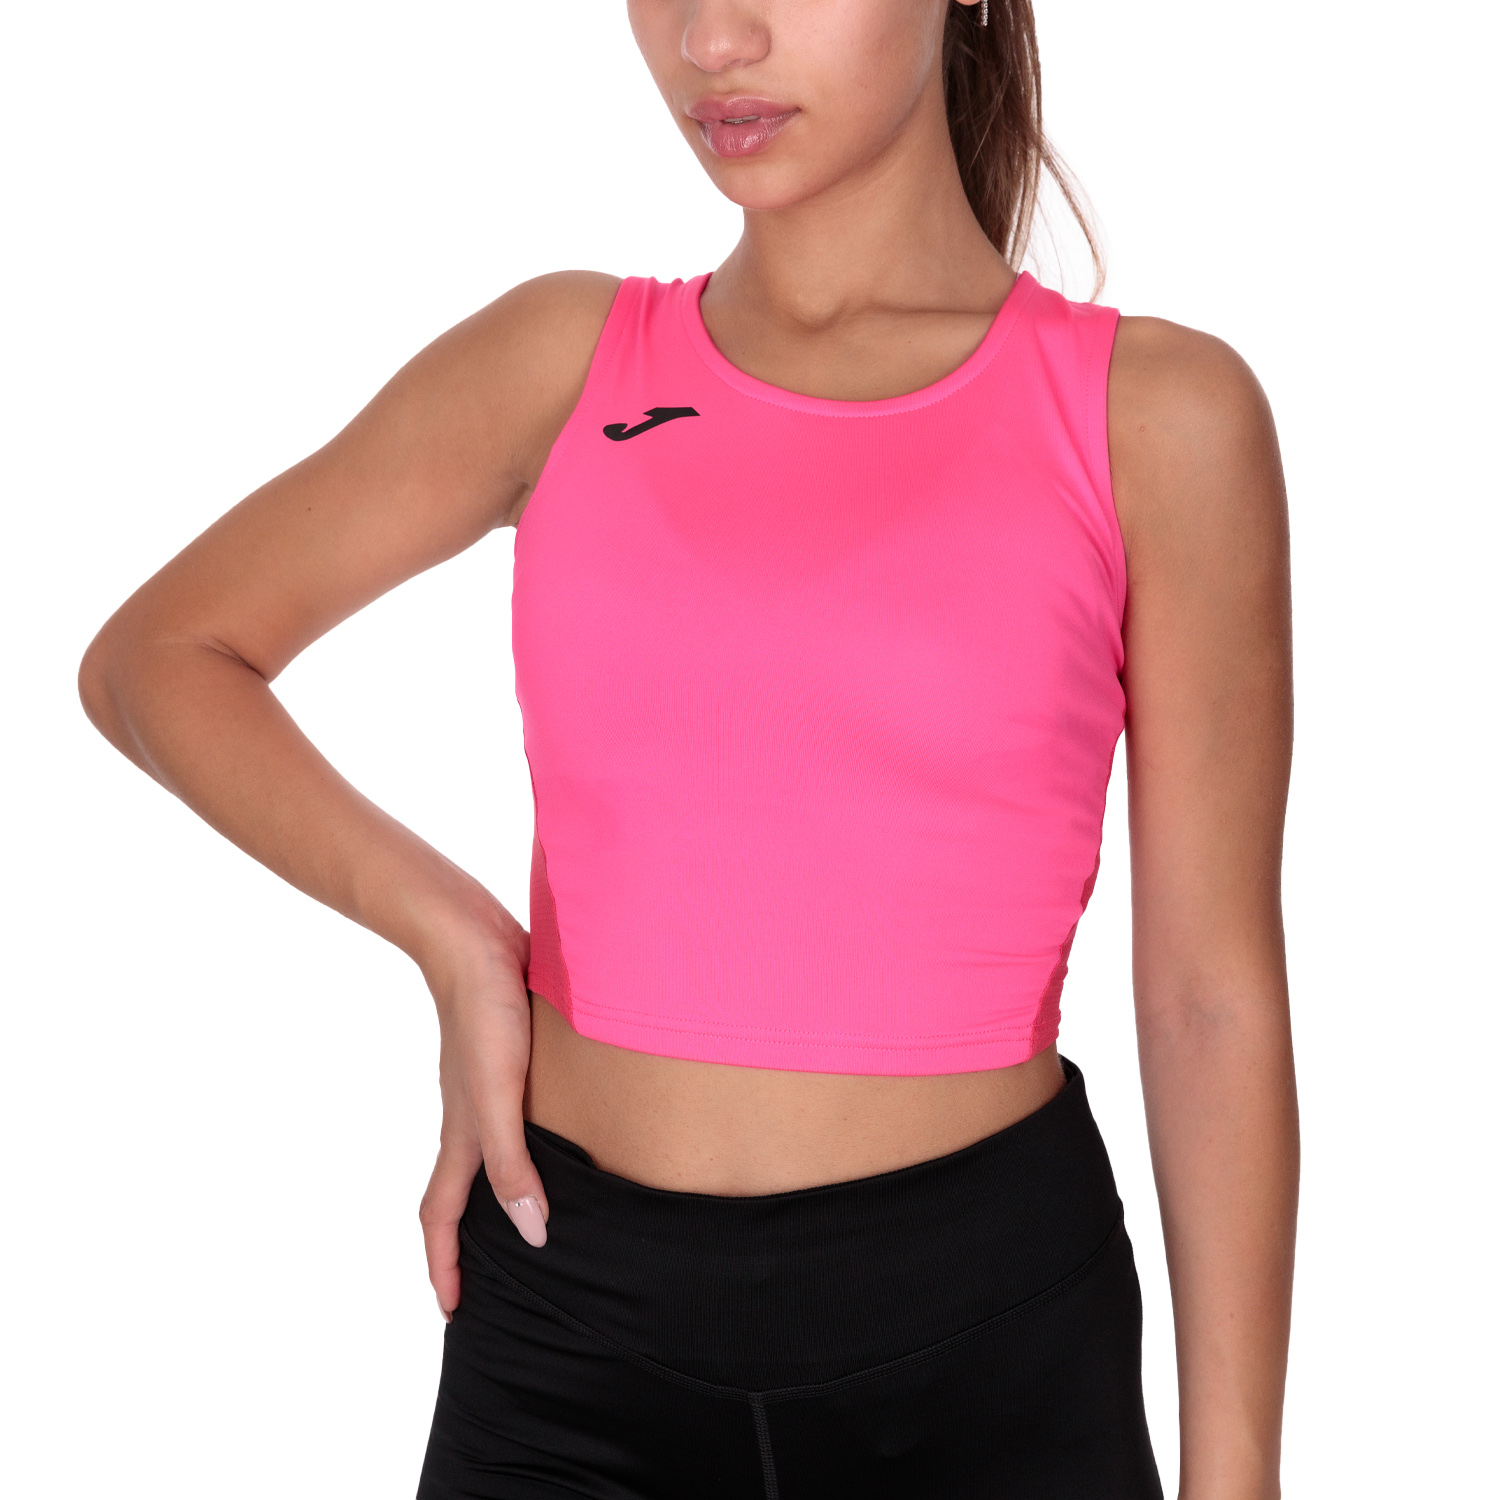 Camiseta tirantes mujer R-Winner rosa flúor